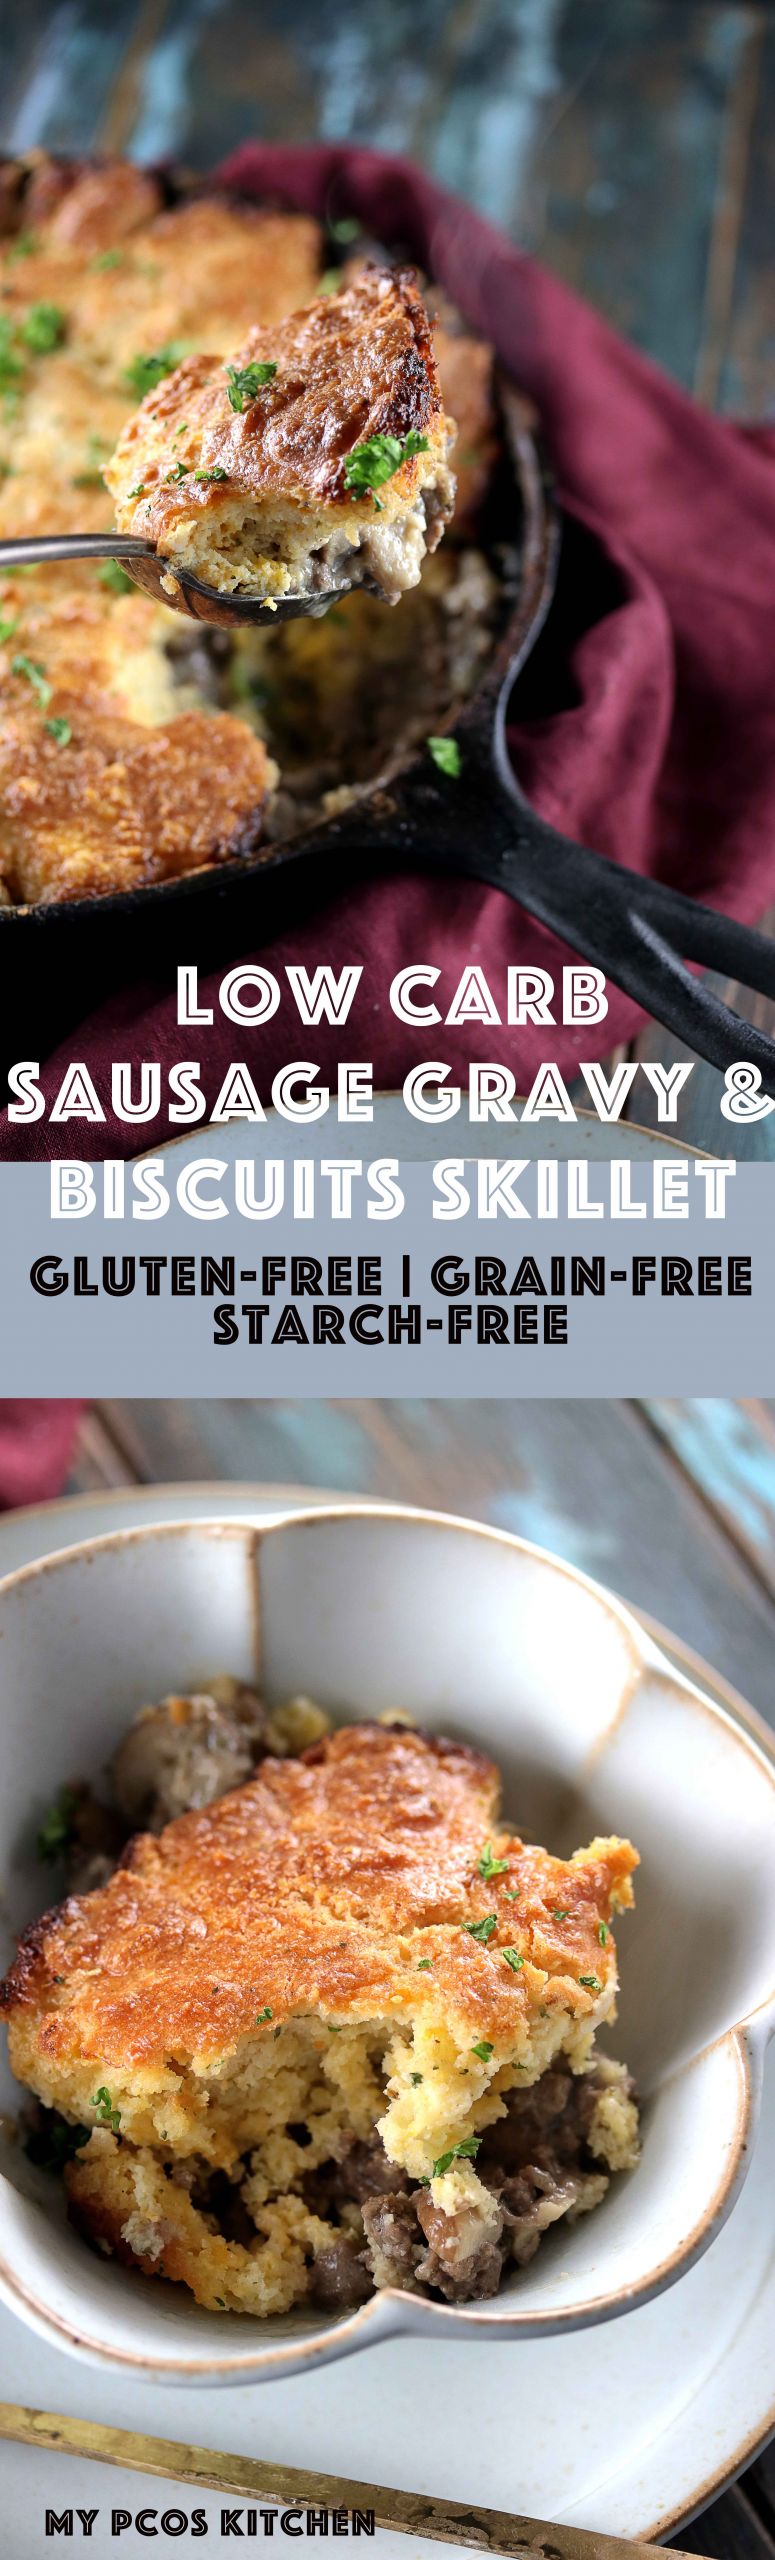 Low Carb Sausage Gravy
 Low Carb Sausage Gravy & Biscuits Skillet Gluten free